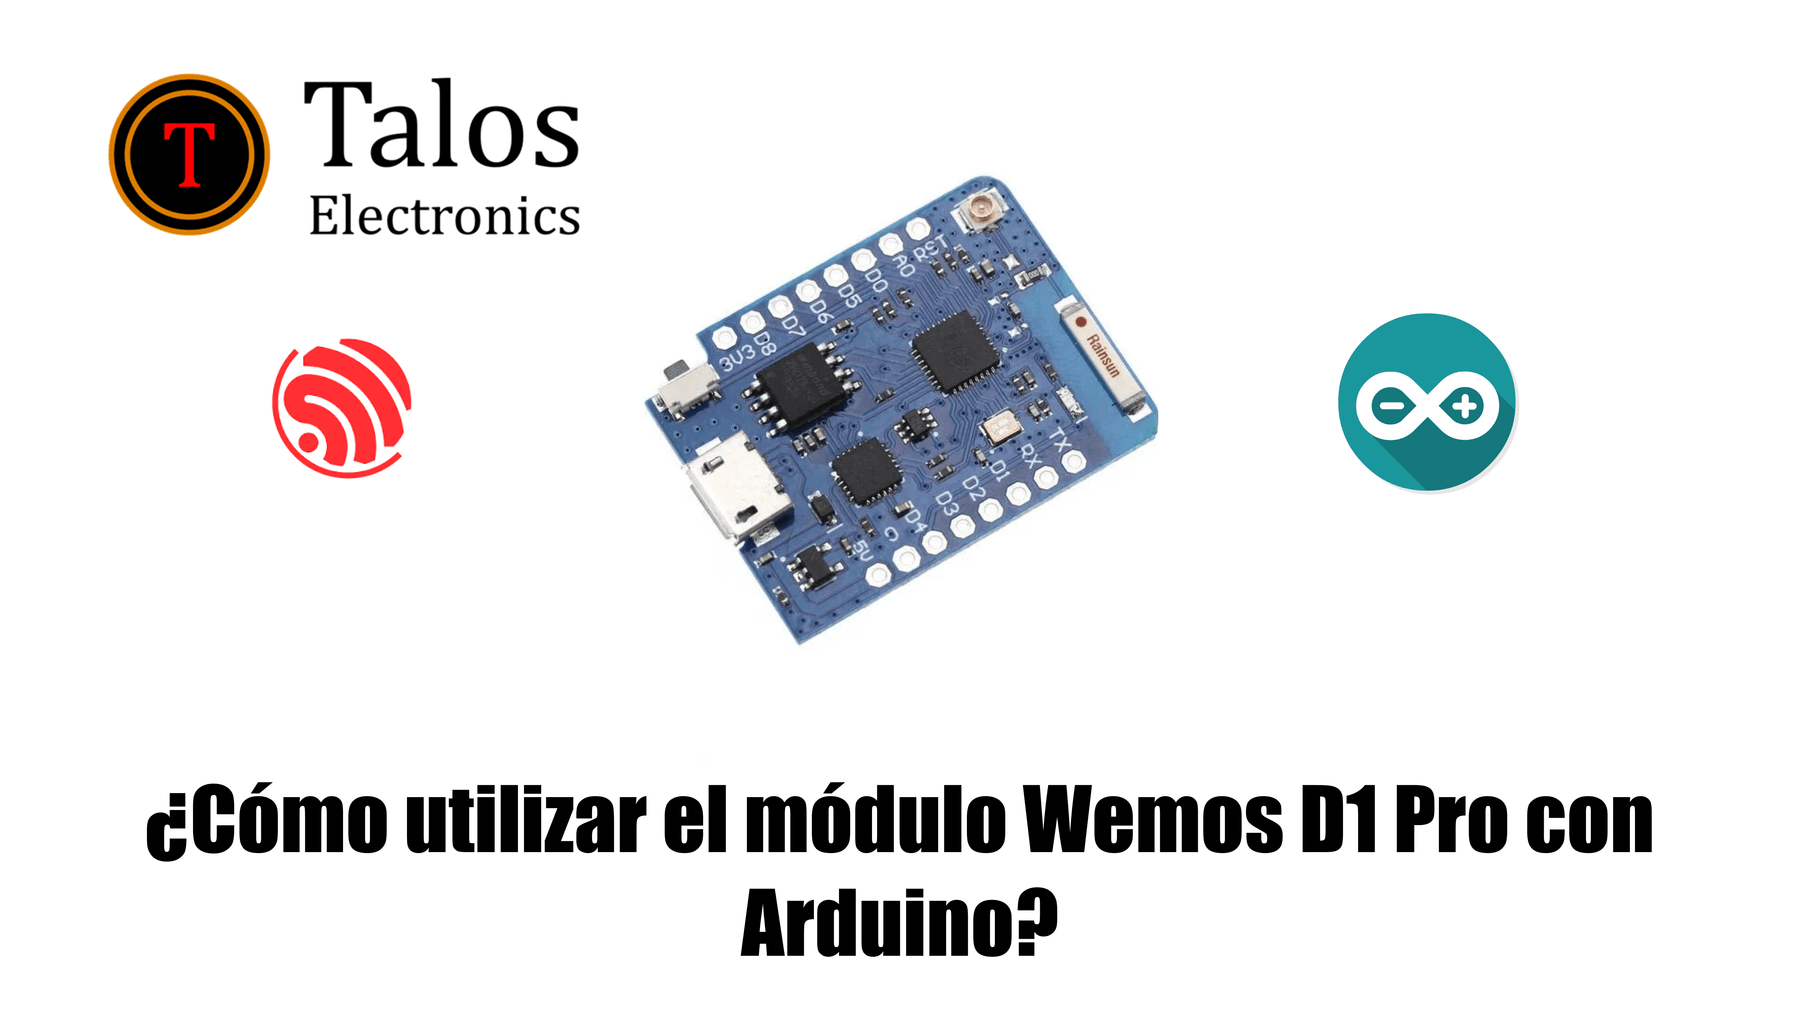 ¿Cómo utilizar el módulo Wemos D1 Pro con Arduino?